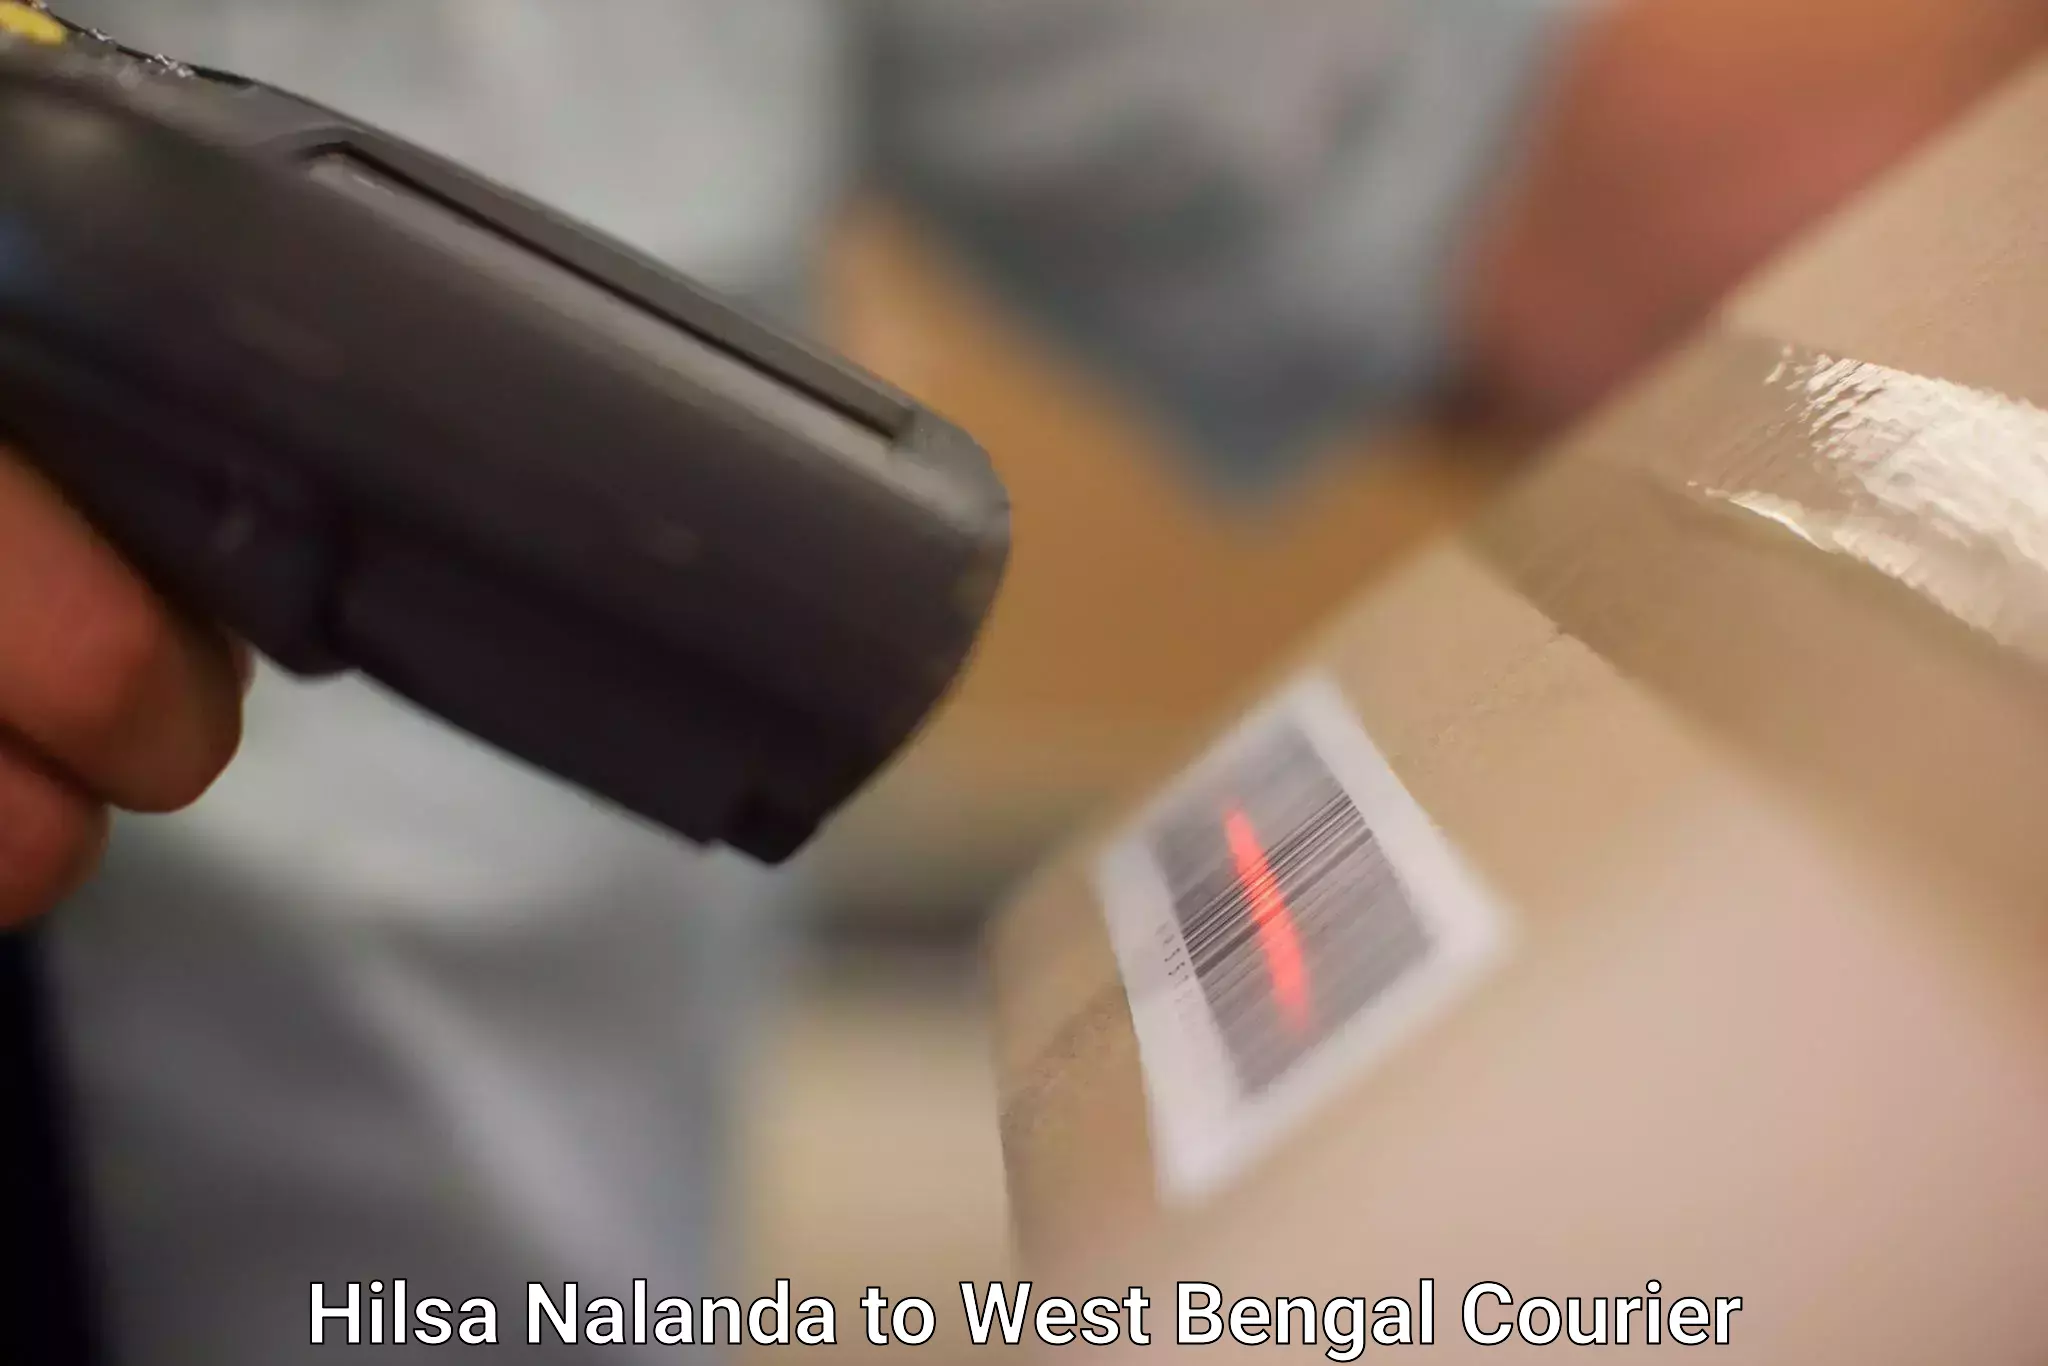 Global courier networks Hilsa Nalanda to Salkia